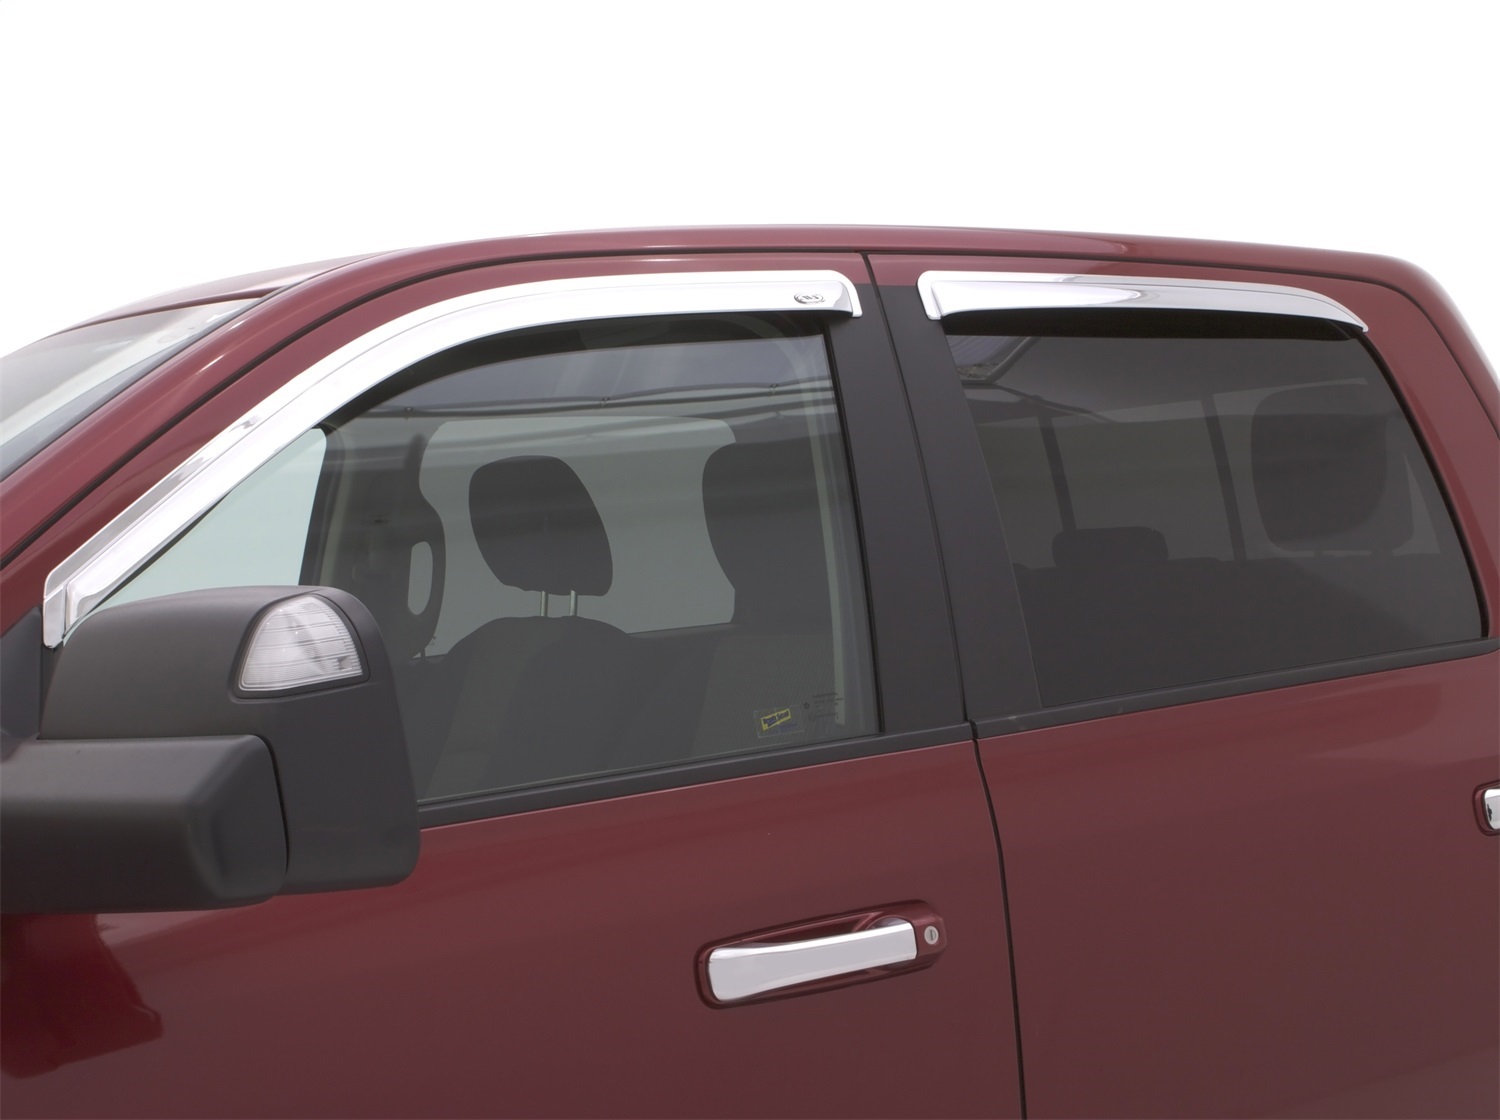 4 StüCk Auto Windabweiser,FüR Dodge RAM Pickup 2009-2019+,Auto  Seitenscheiben Vorn Und Hinten Smoke Rain Visor Guard Modify ZubehöR :  : Auto & Motorrad